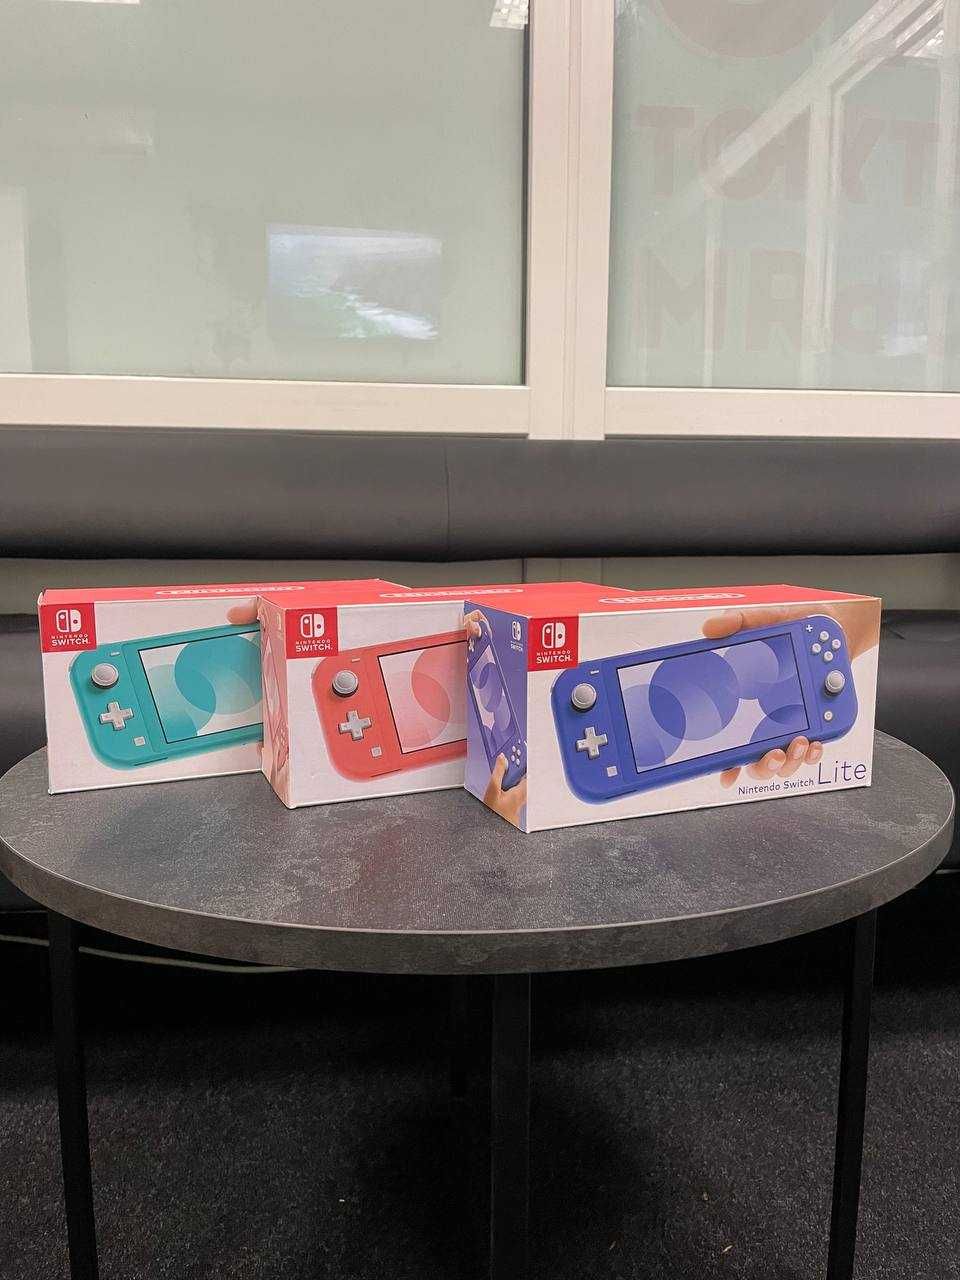 Приставка Nintendo Switch